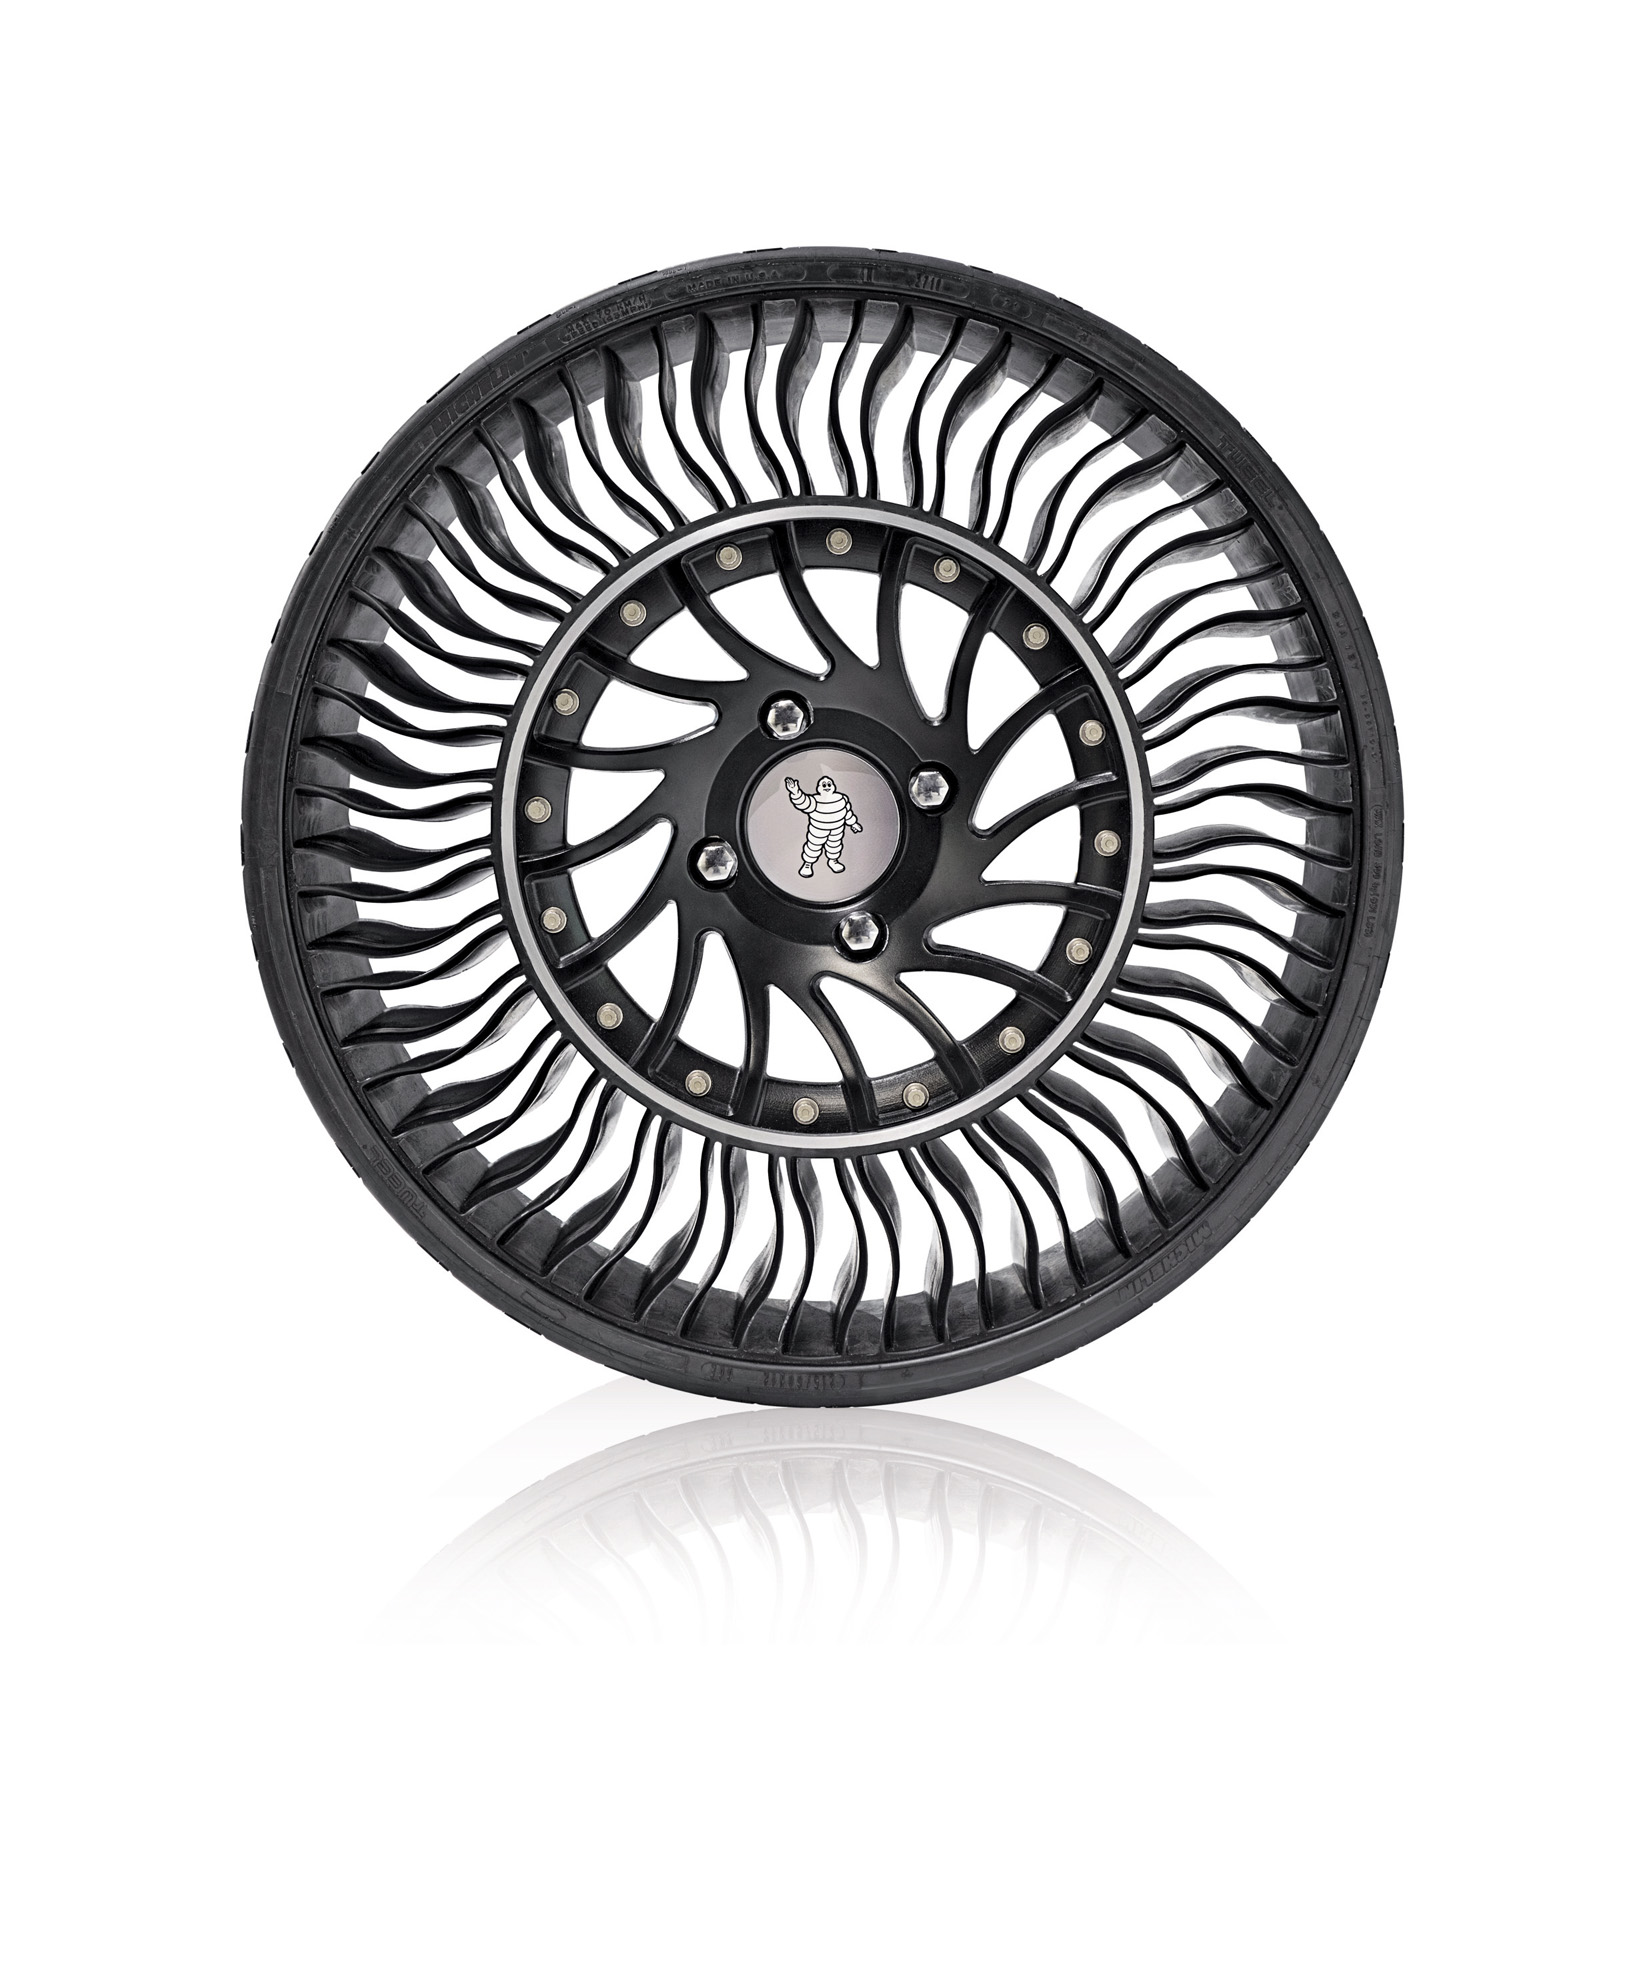 Michelin es el fabricante de neumáticos del año